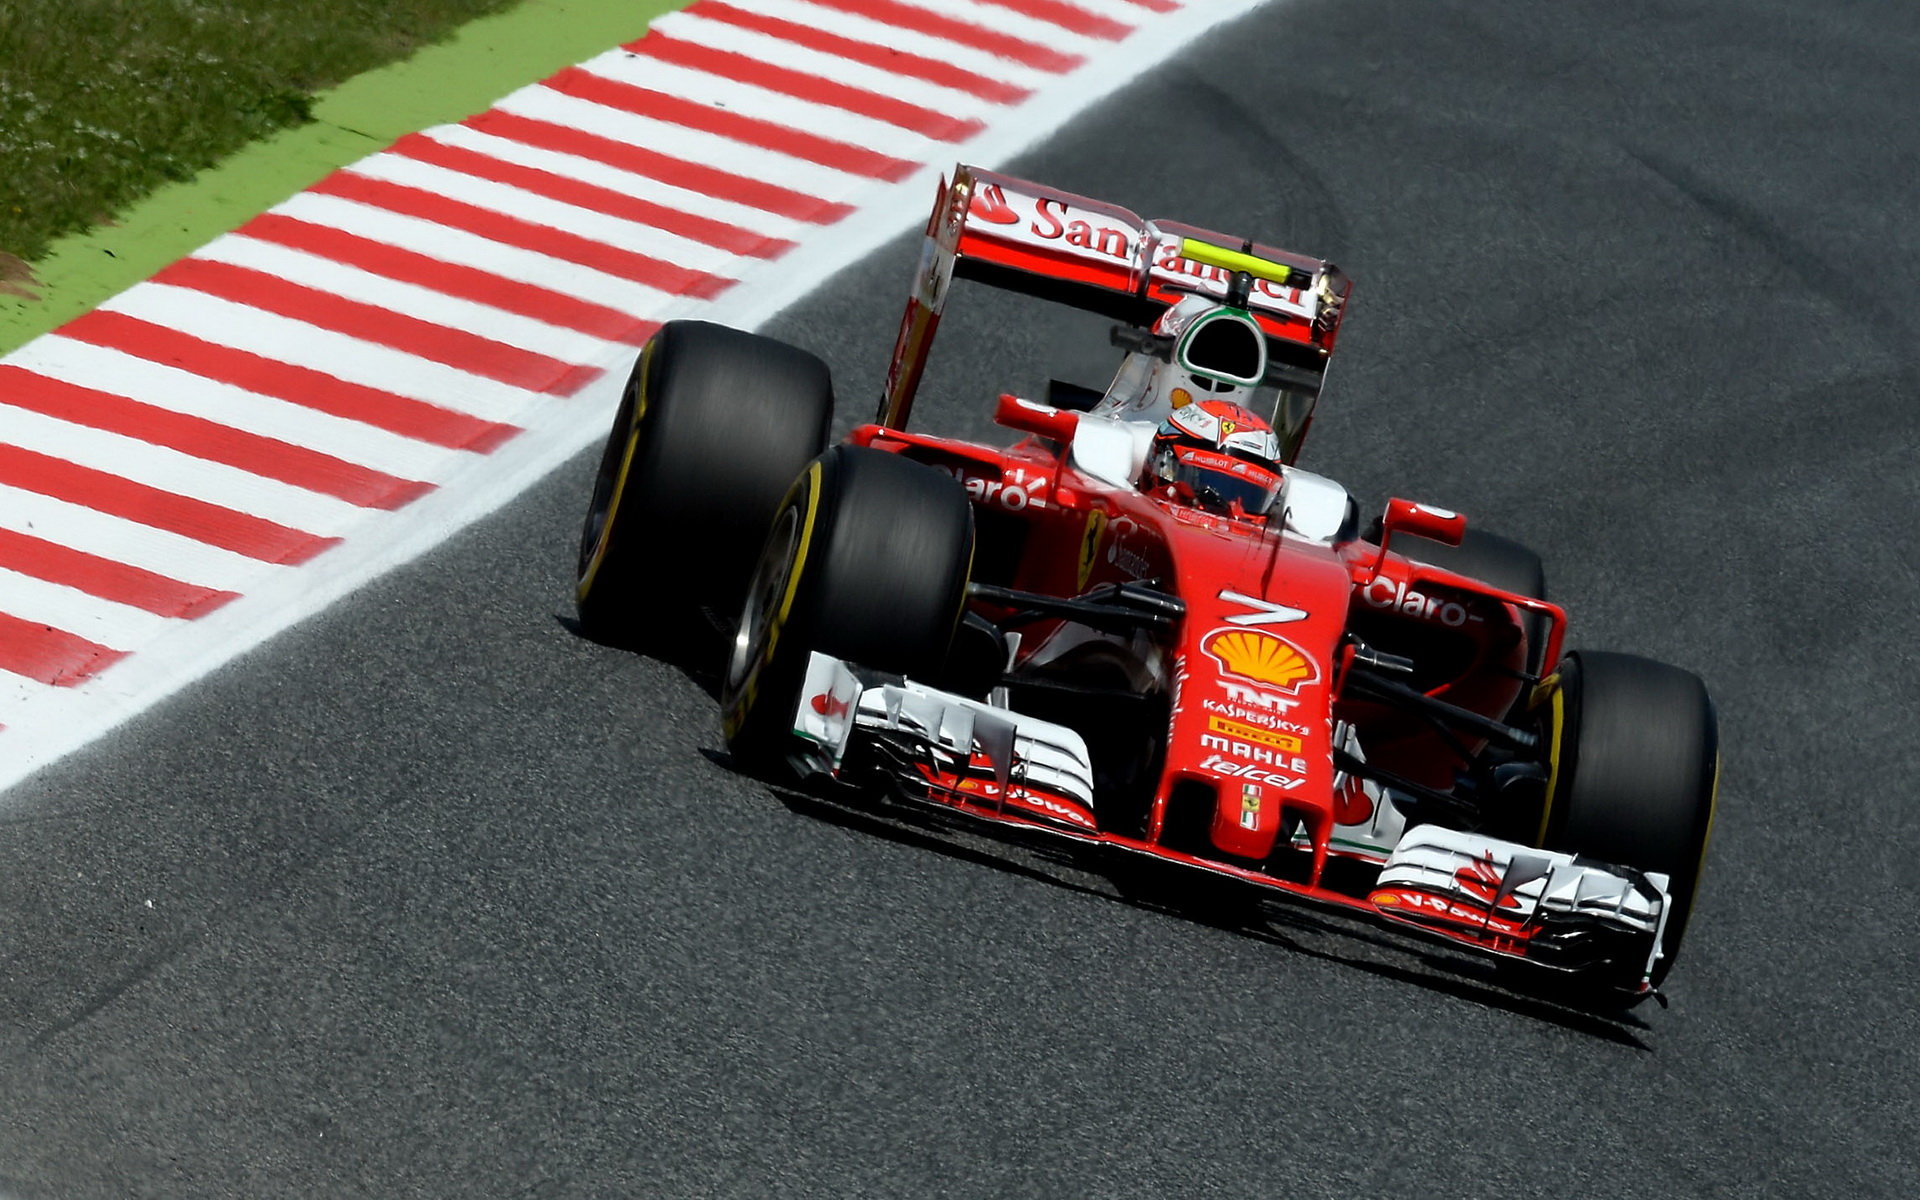 Kimi Räikkönen sice chvíli vedl tréninkové výsledky, ale poslední část mu příliš nevyšla